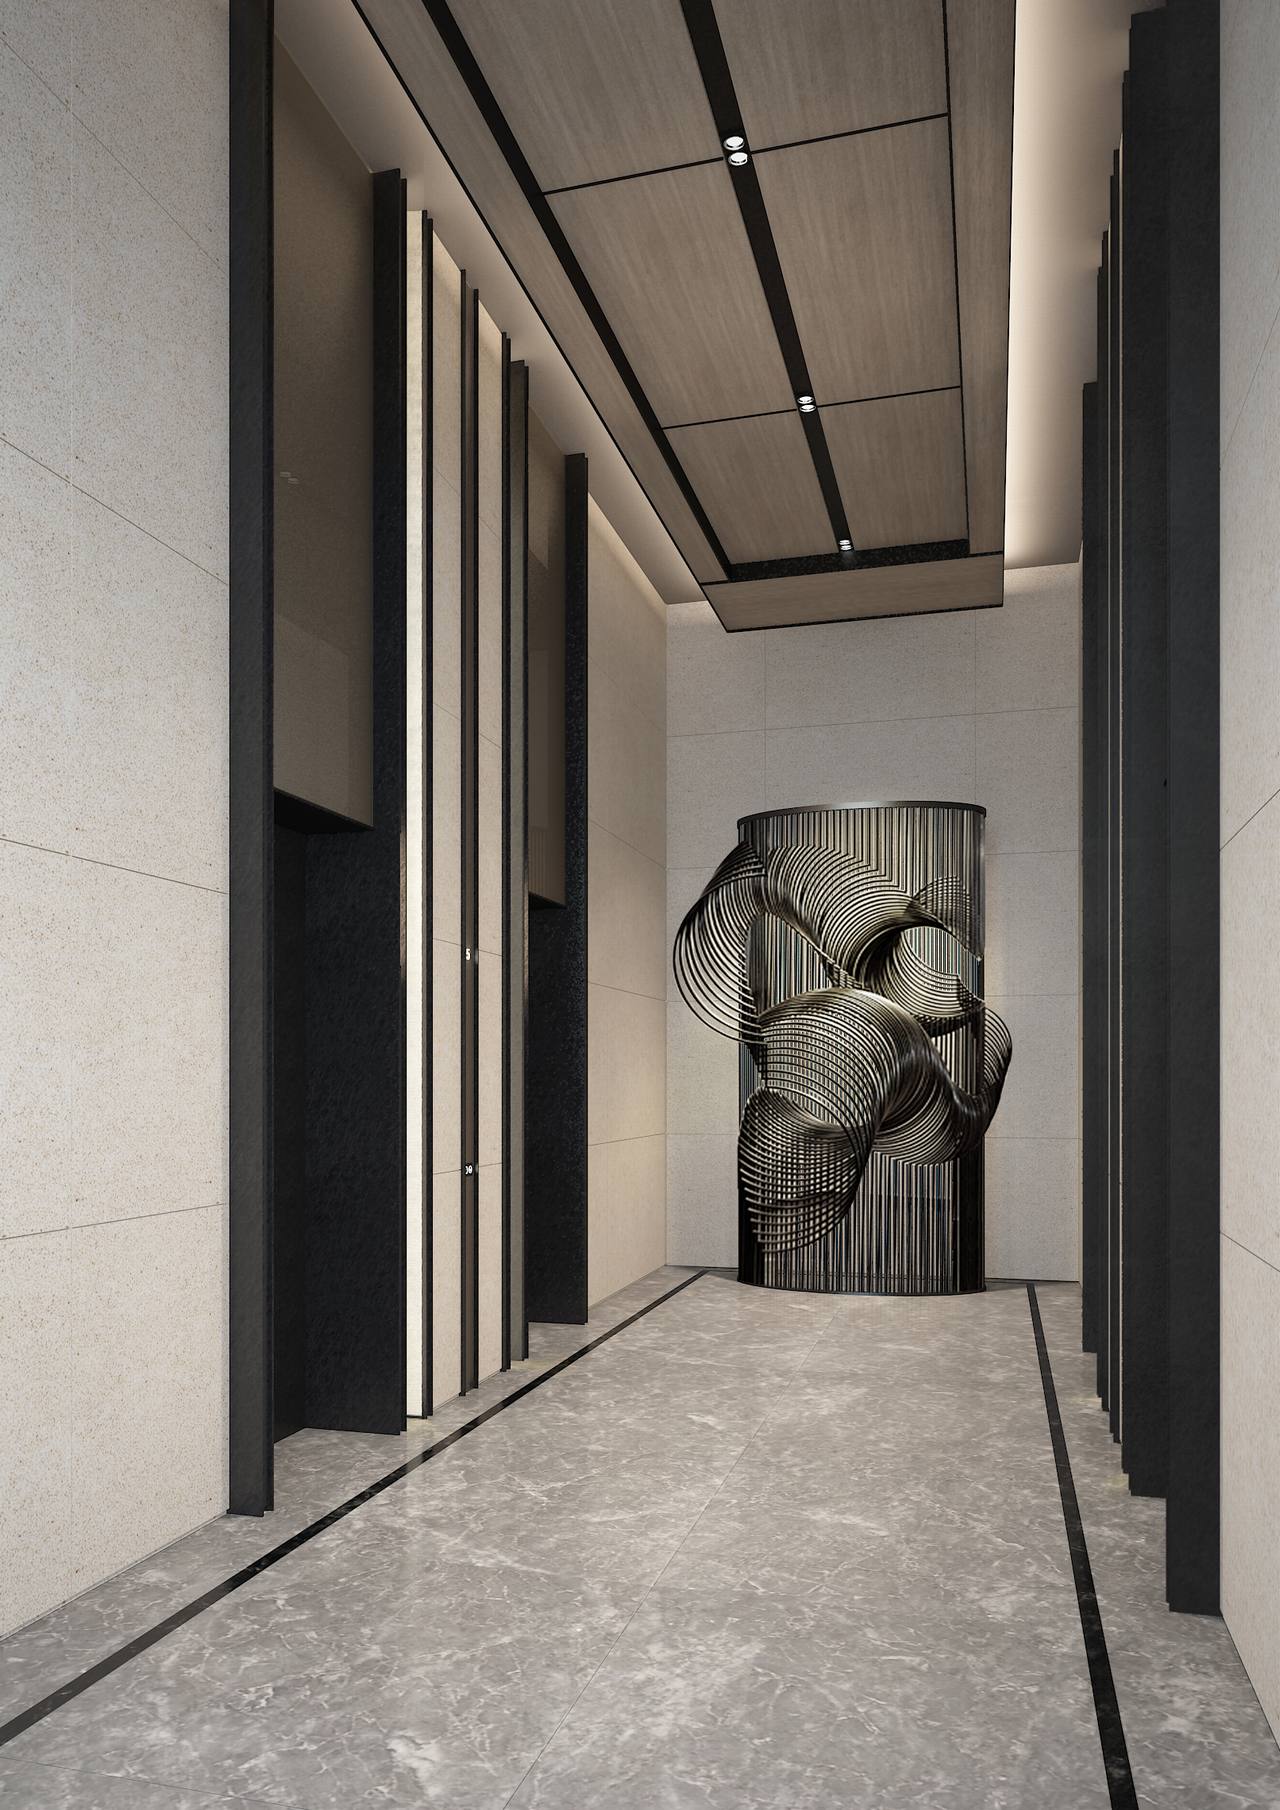 【SCDA&如恩】华润公寓大堂+电梯间软装方案&效果图&施工图&物料表-2